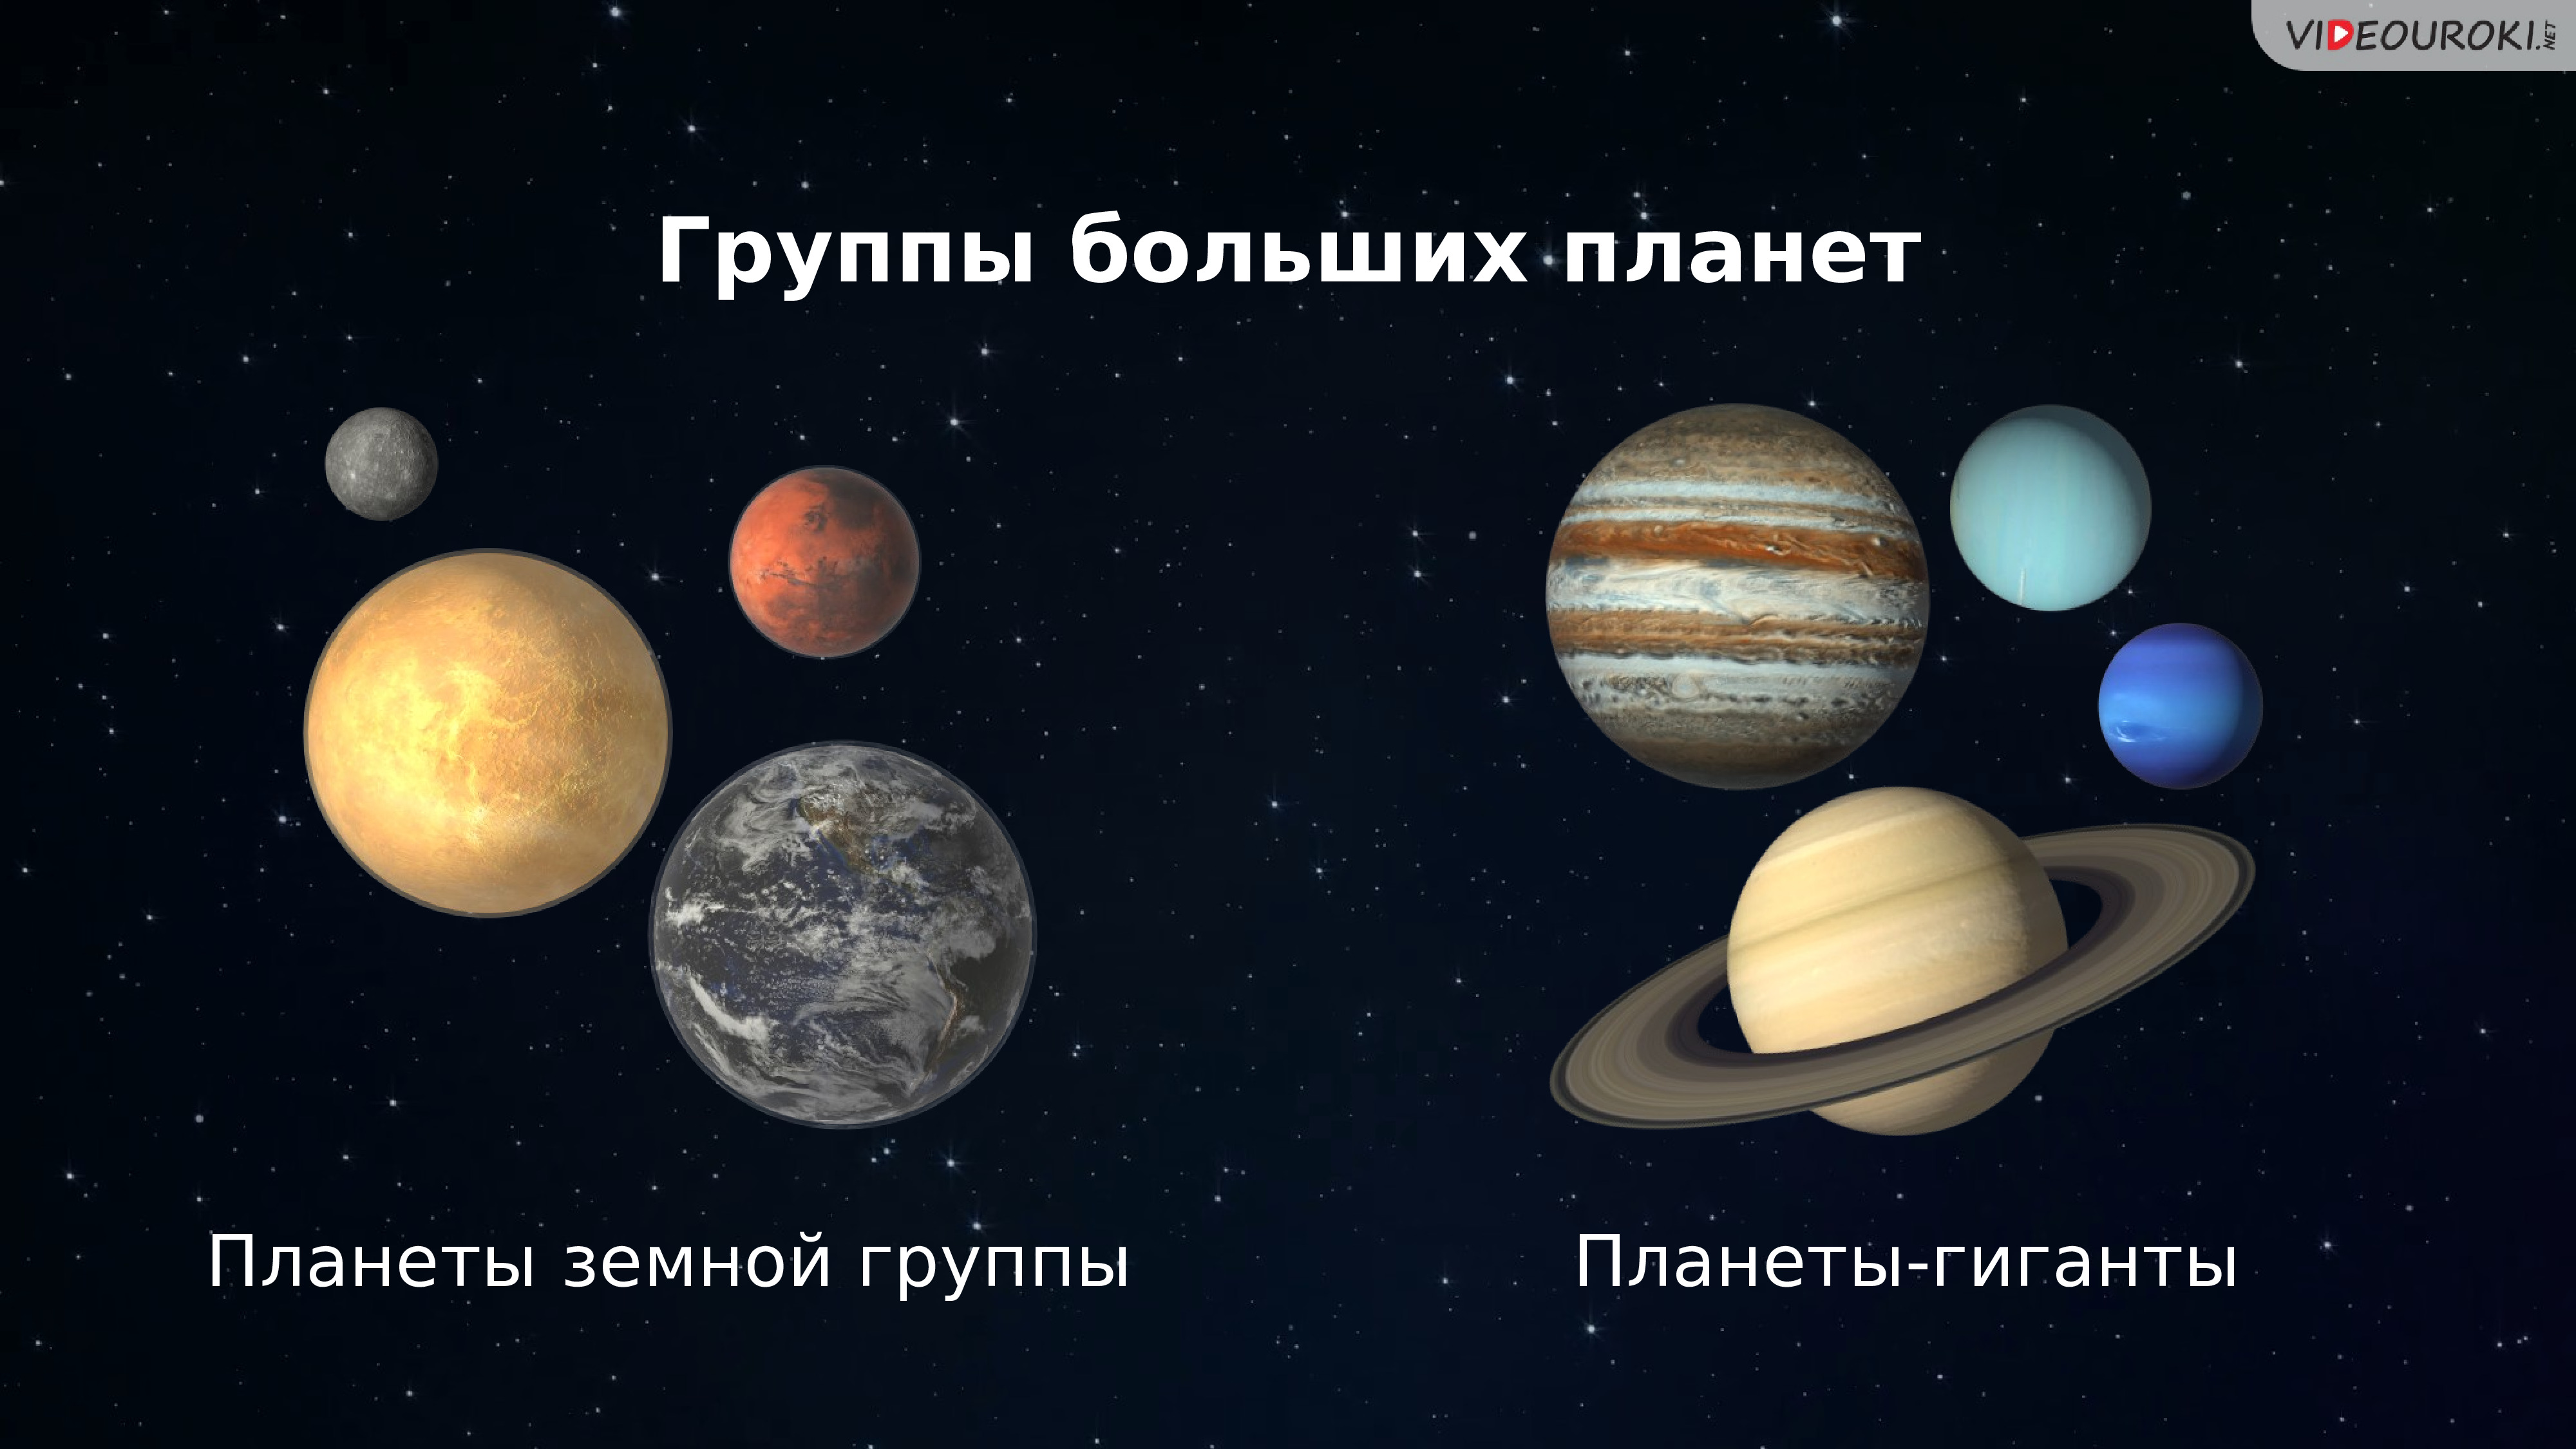 Планеты второй группы. Планеты земной группы солнечной системы. Планеты земной группы солнечной си. Планеты гиганты и земной группы. Земные планеты и планеты гиганты.